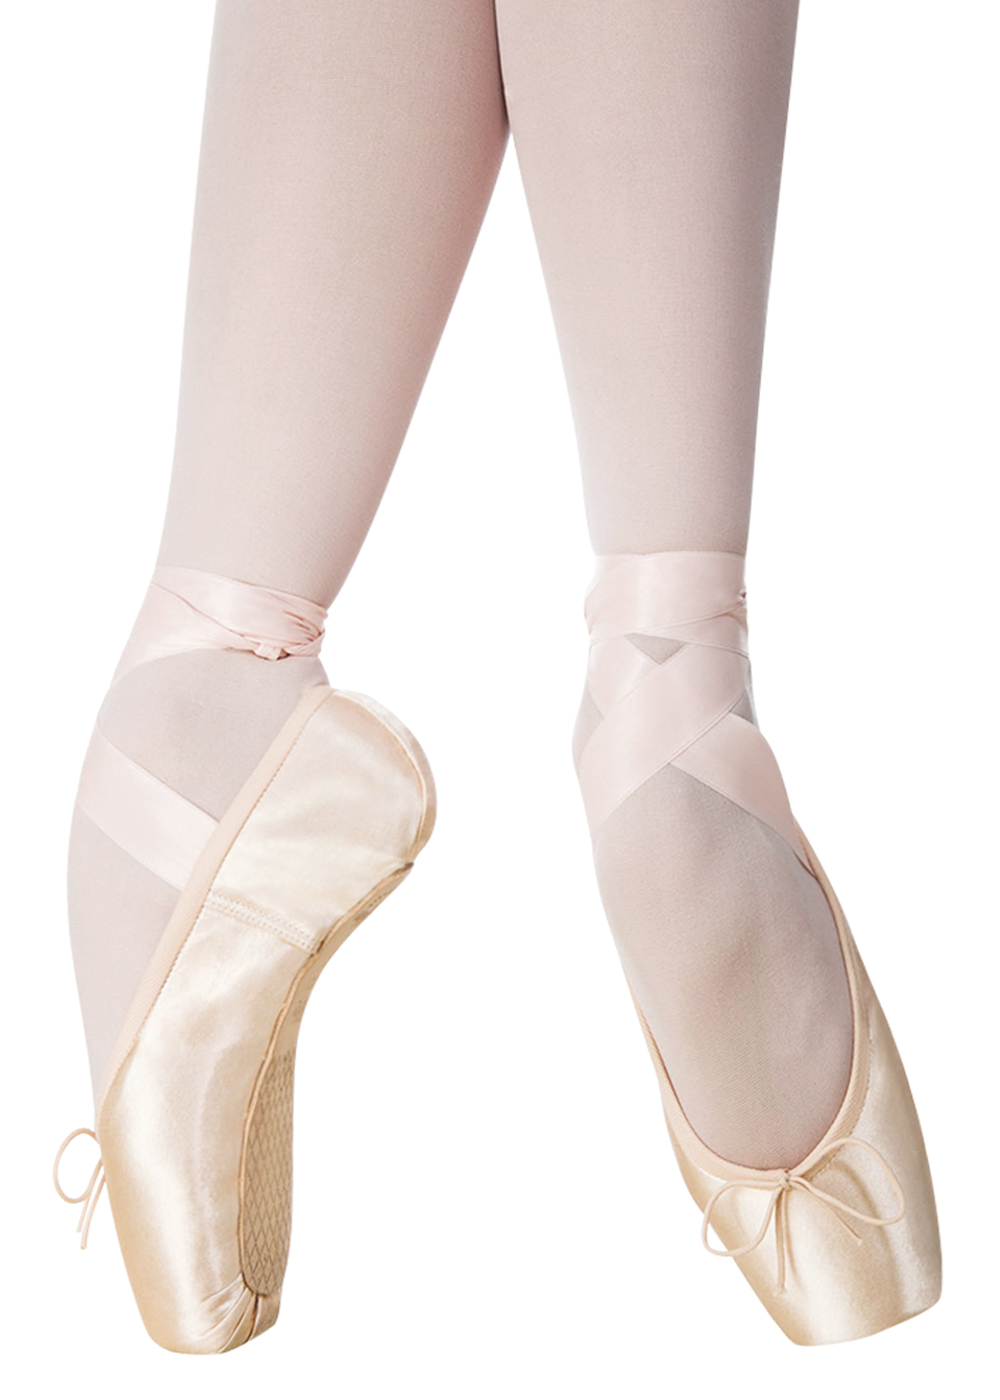 Estimar kiwi Opiáceo Puntas de Ballet Triumph Grishko - Calzado Ballet para Comprar Online